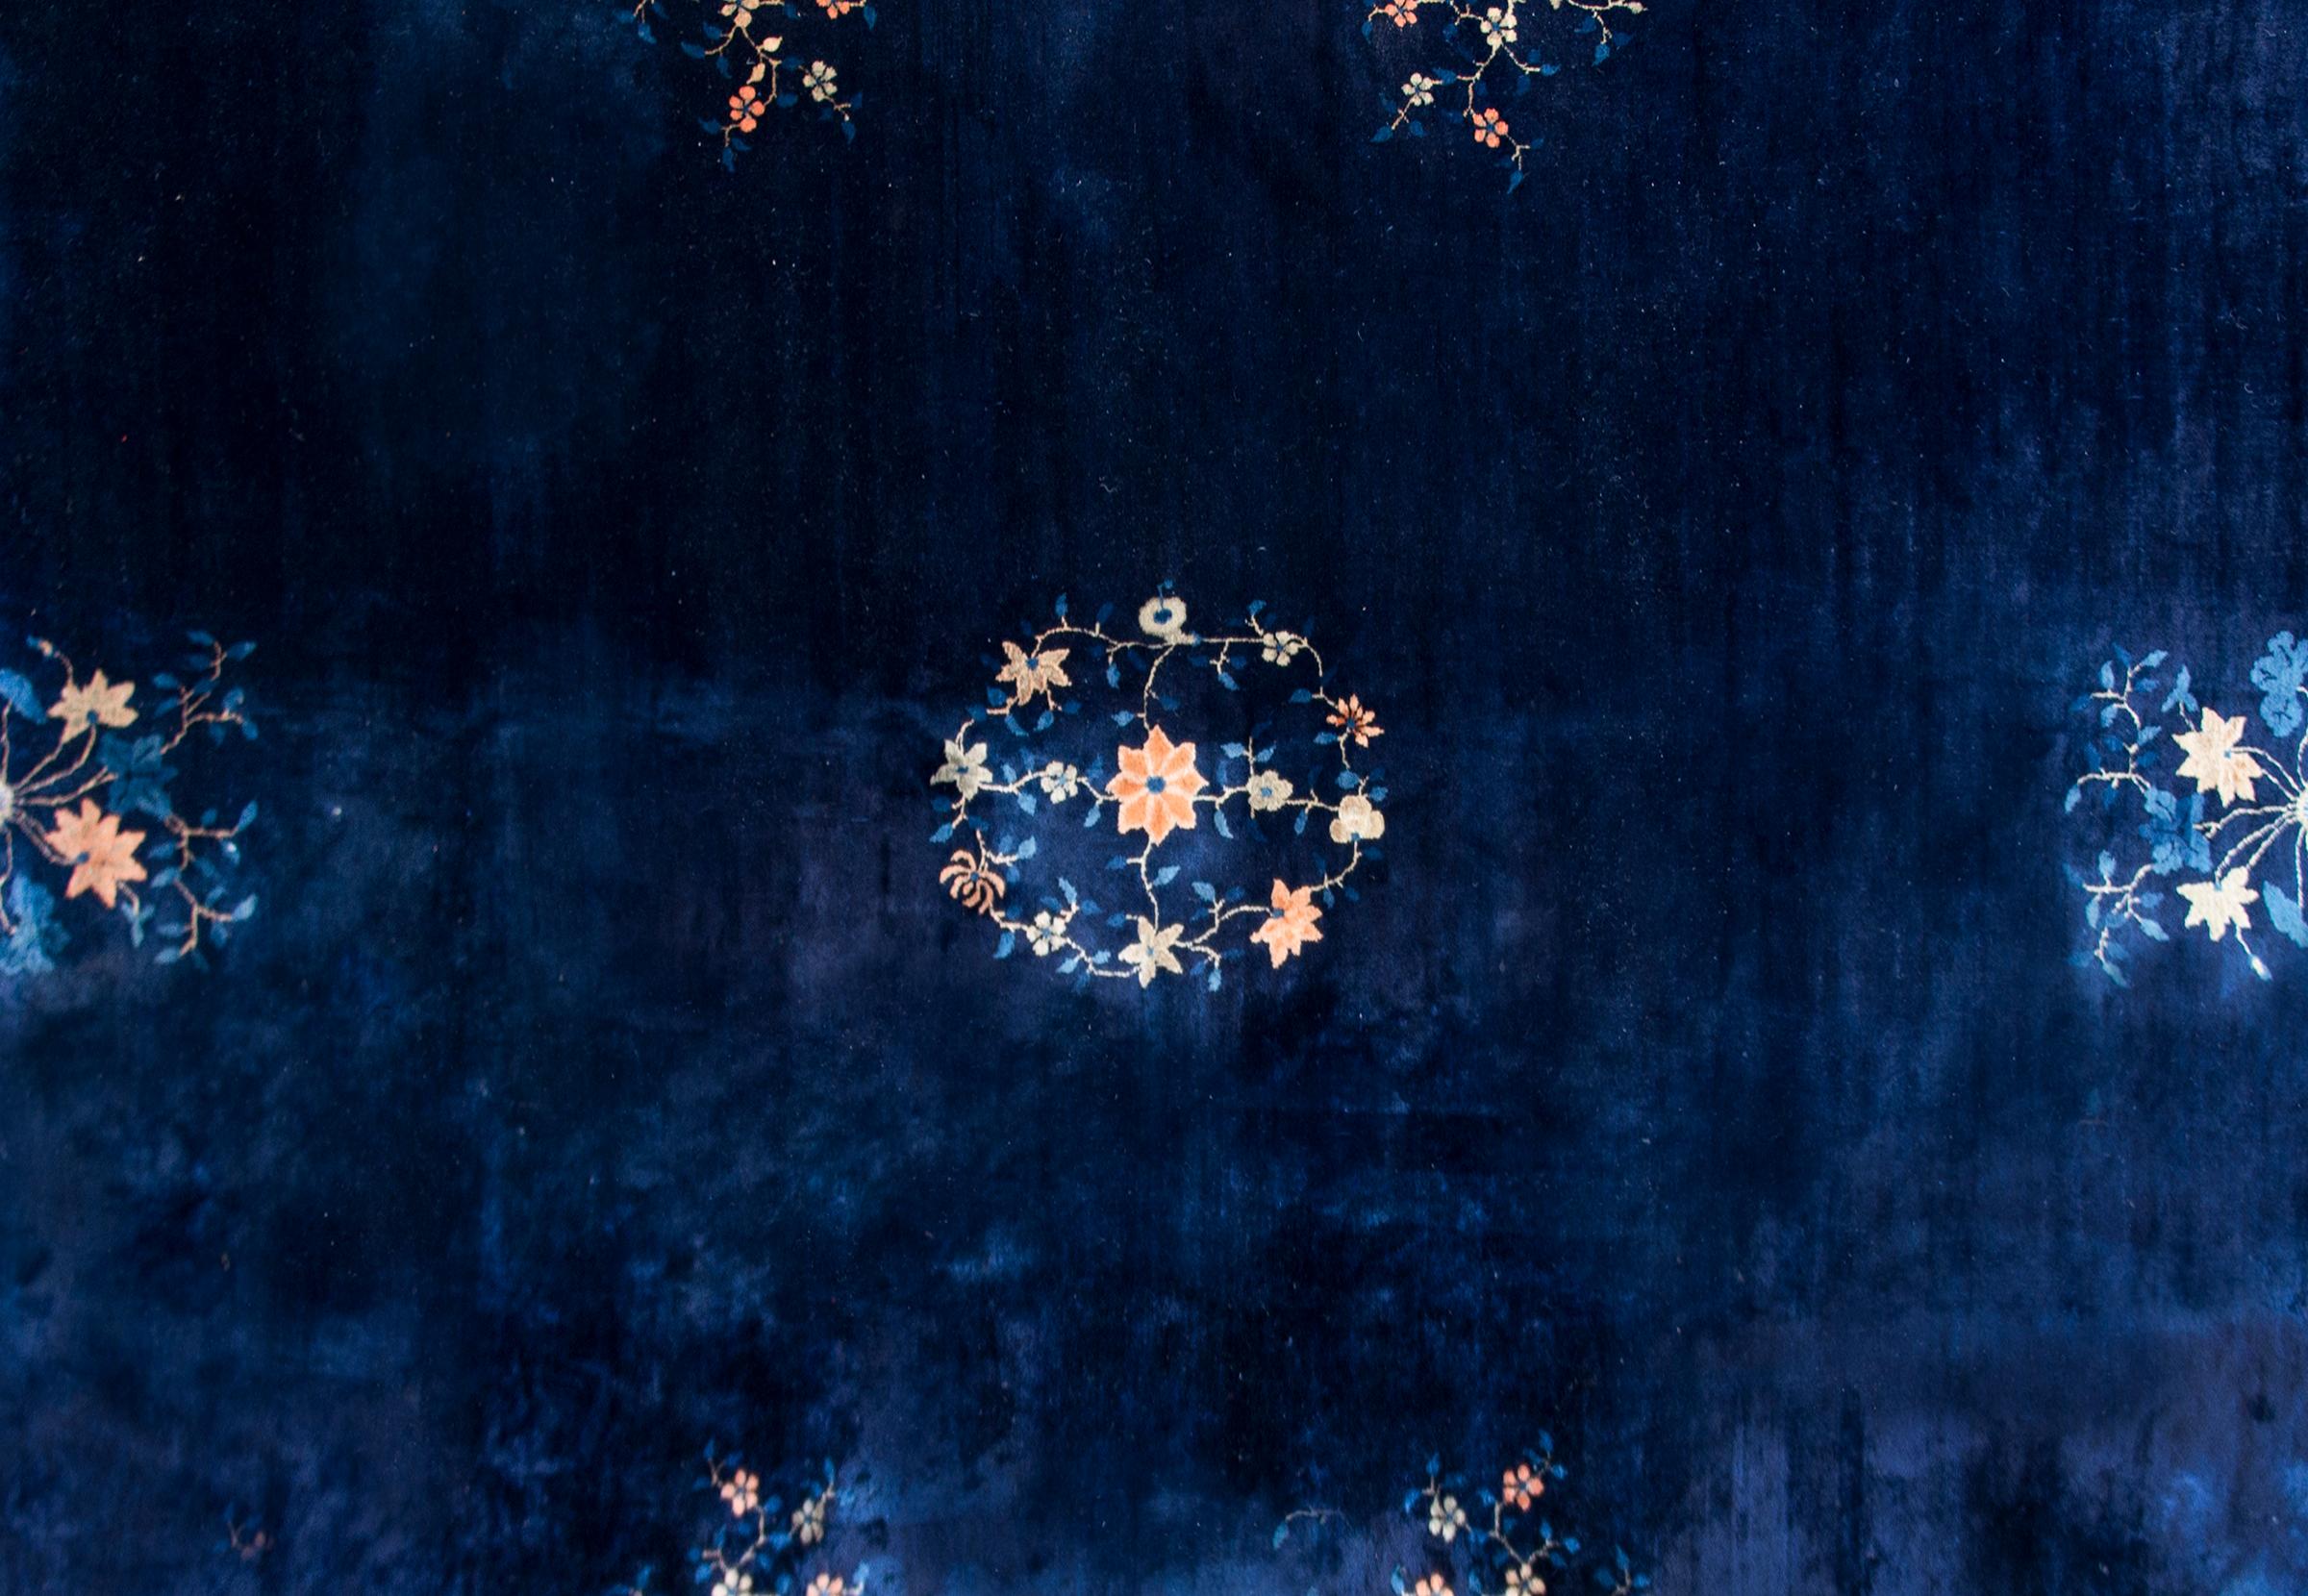 Magnifique tapis chinois de Pékin du début du XXe siècle au motif simple contenant un médaillon floral central sur un fond indigo foncé, entouré d'une large bordure indigo clair et couvert de fleurs plus propices.